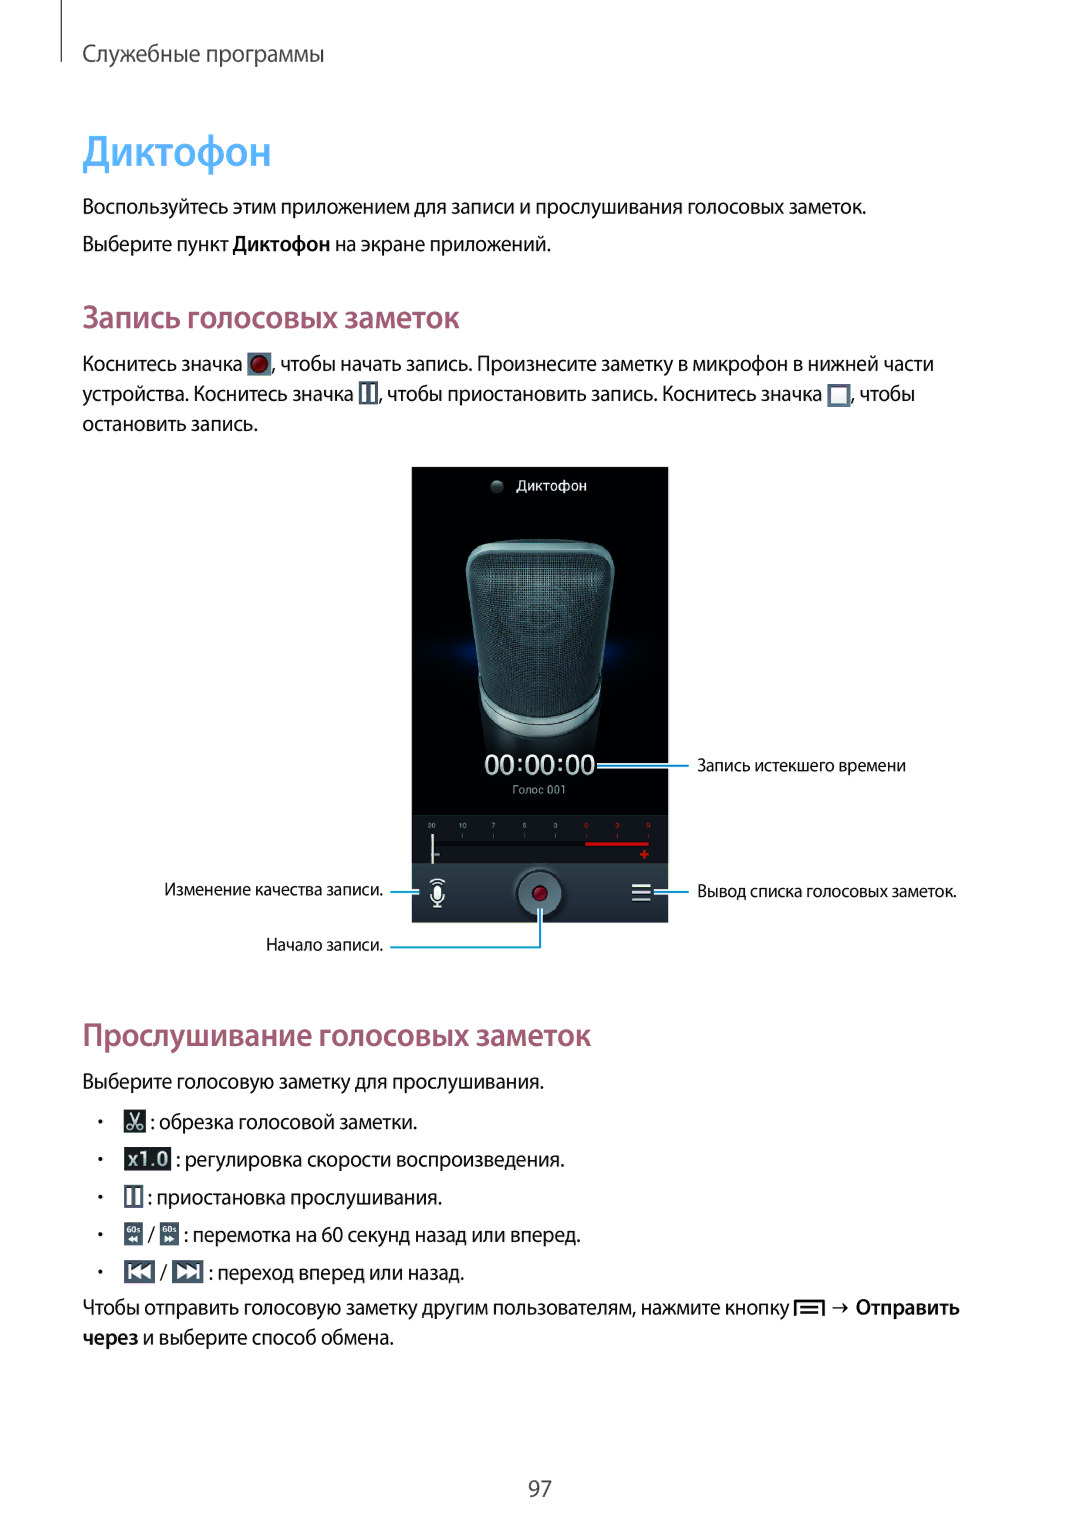 Samsung GT-I9152PPASER, GT-I9152ZKASER, GT-I9152ZWASER Диктофон, Запись голосовых заметок, Прослушивание голосовых заметок 